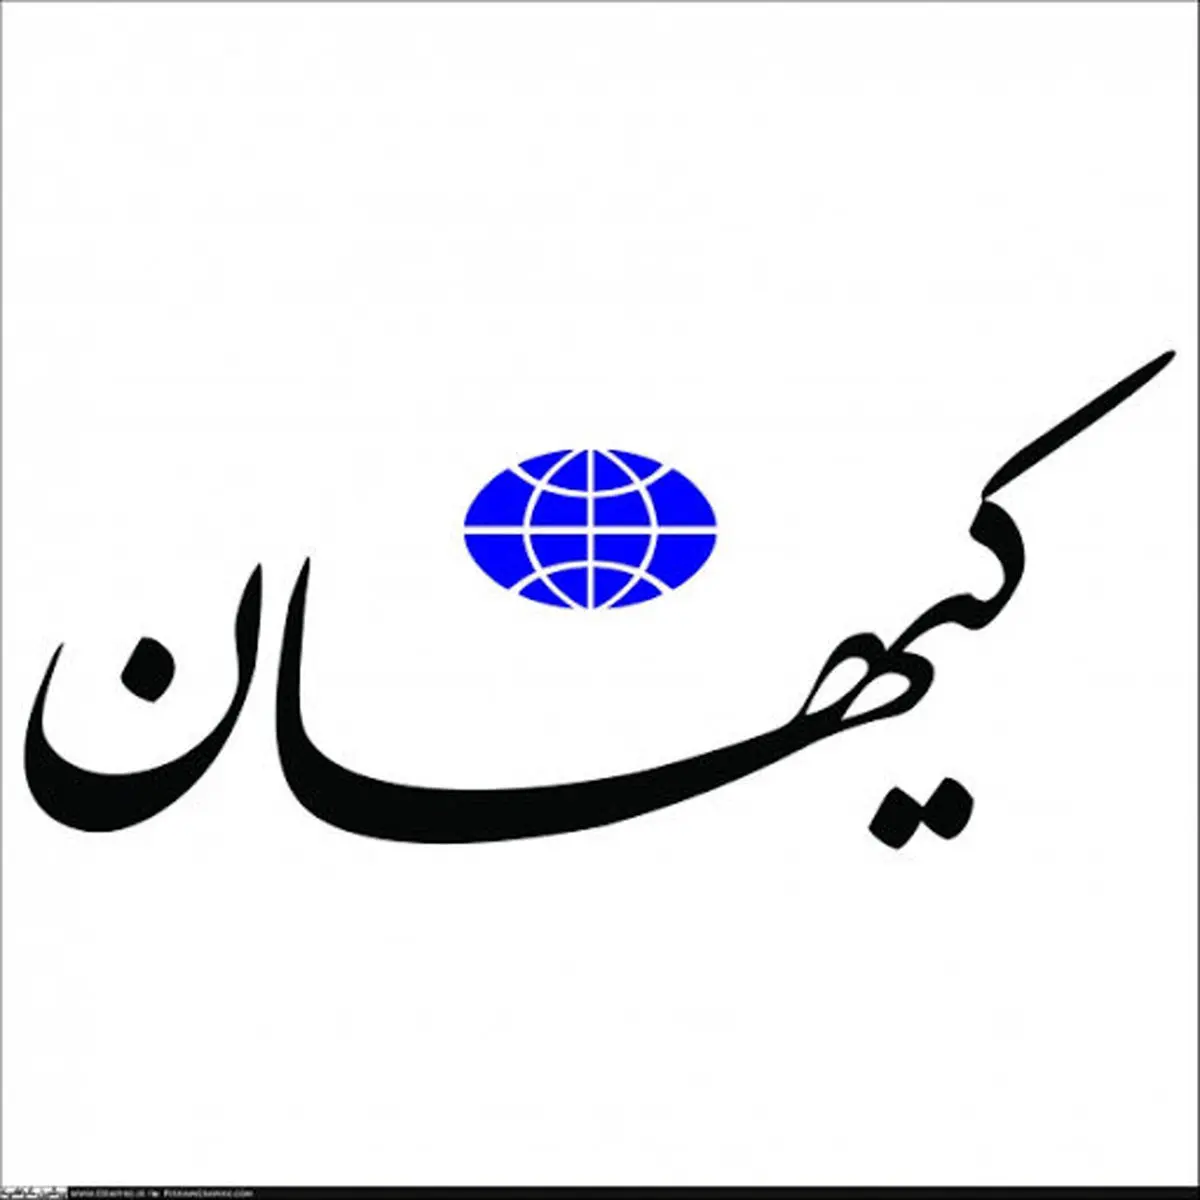 کیهان خطاب به دولت: اول به مردم توضیح بدهید، بعدا به آنها فشار بیاورید